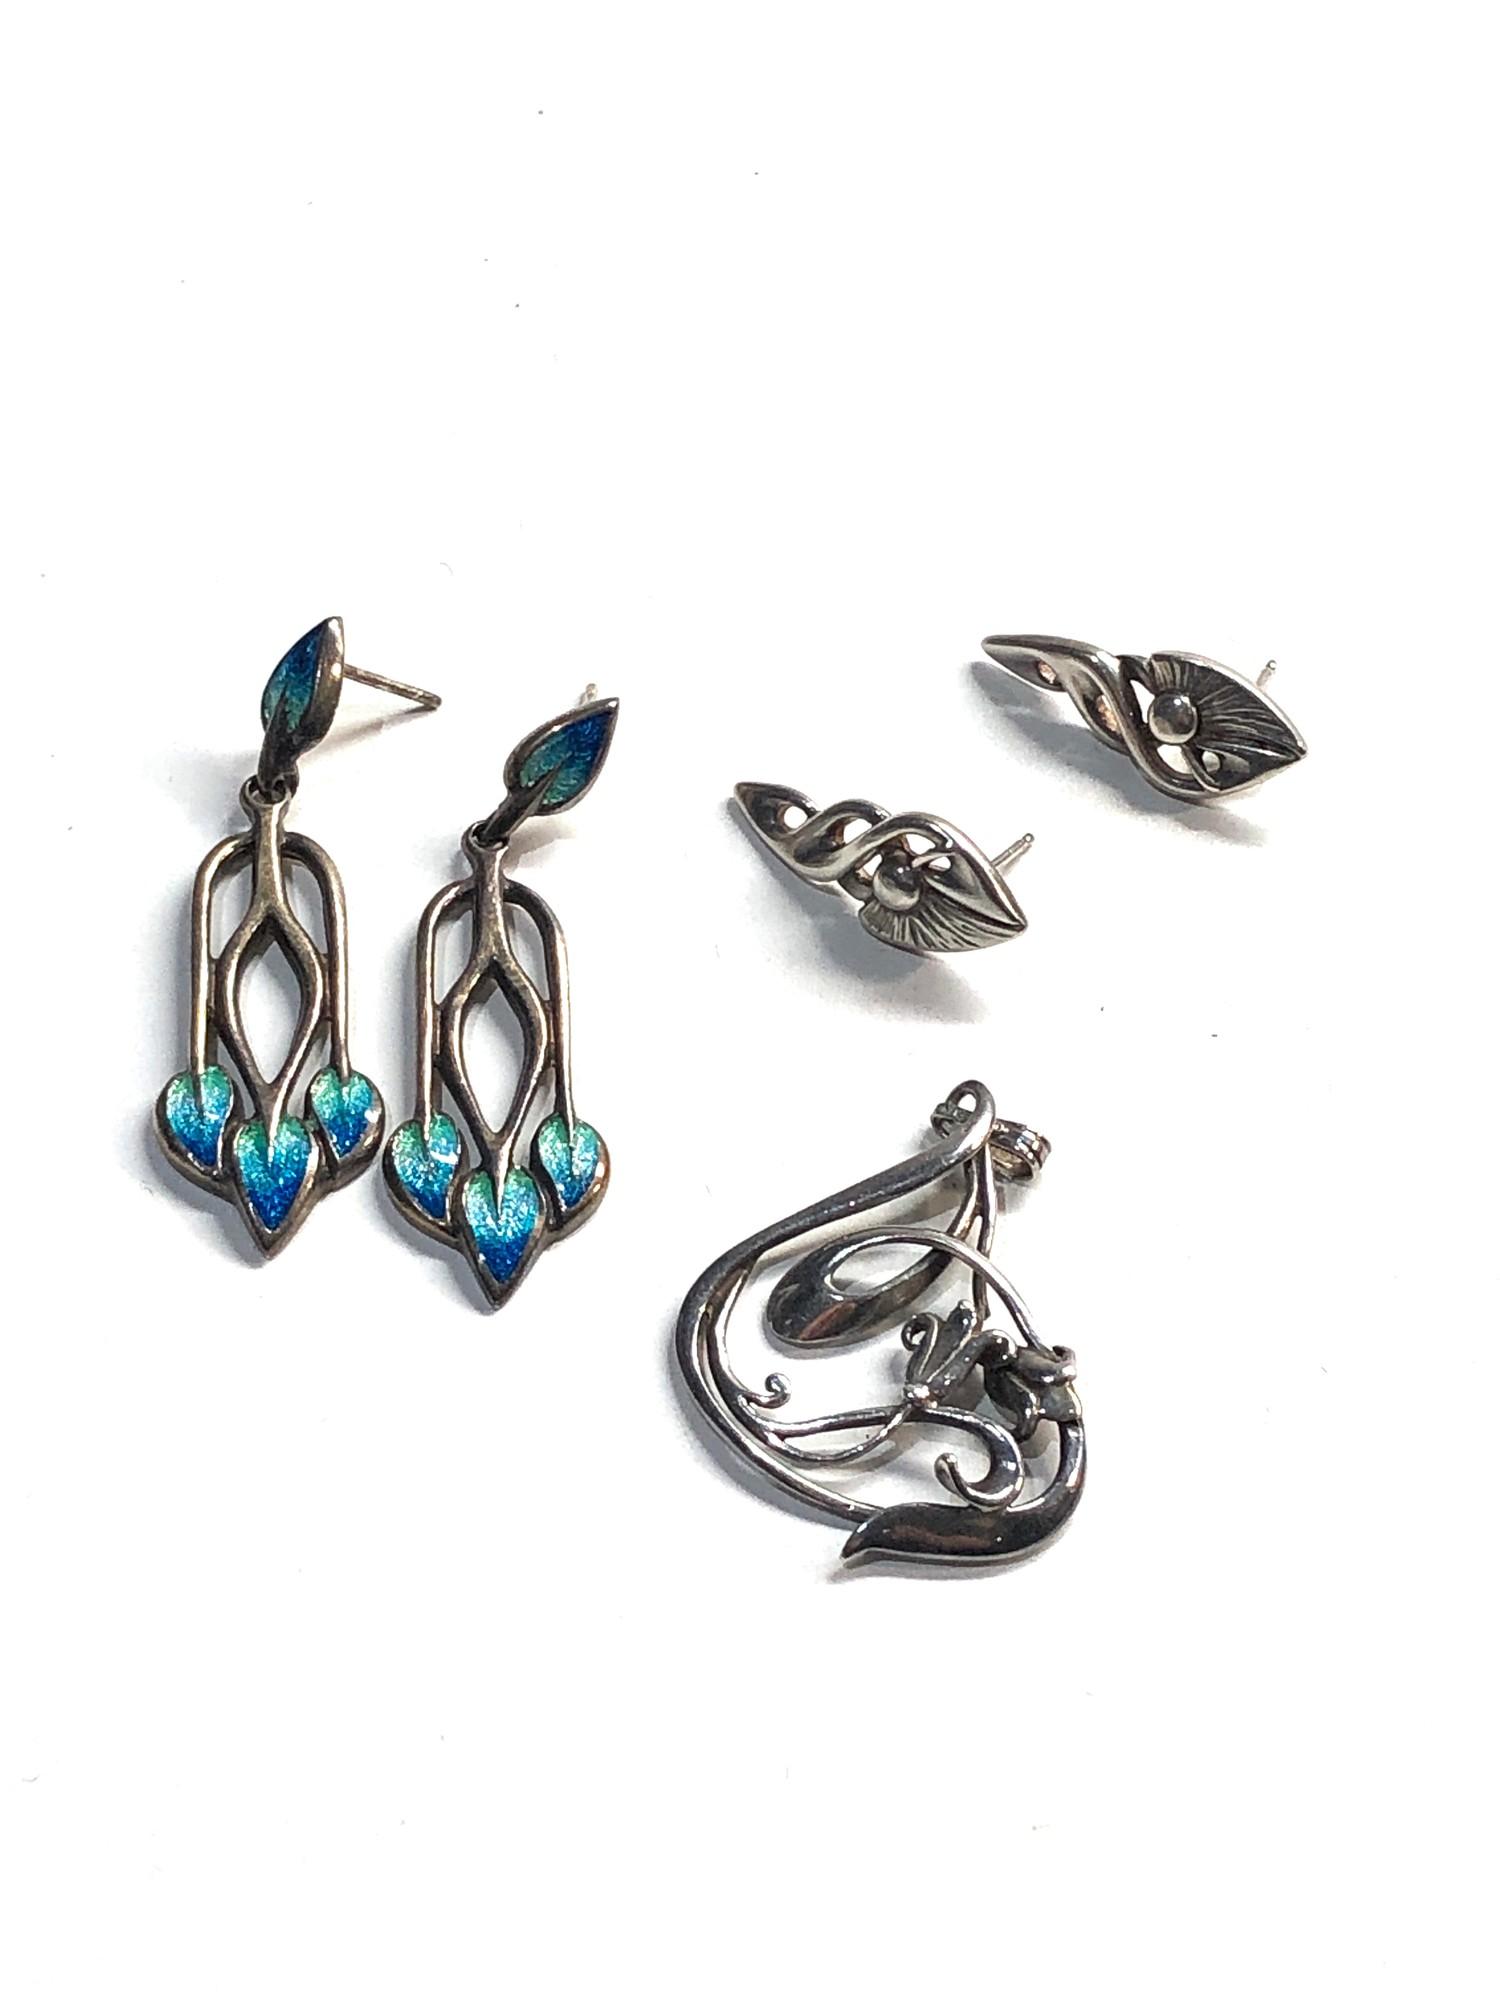 2 Ola Gories earrings 1 set enamelled - Image 2 of 3